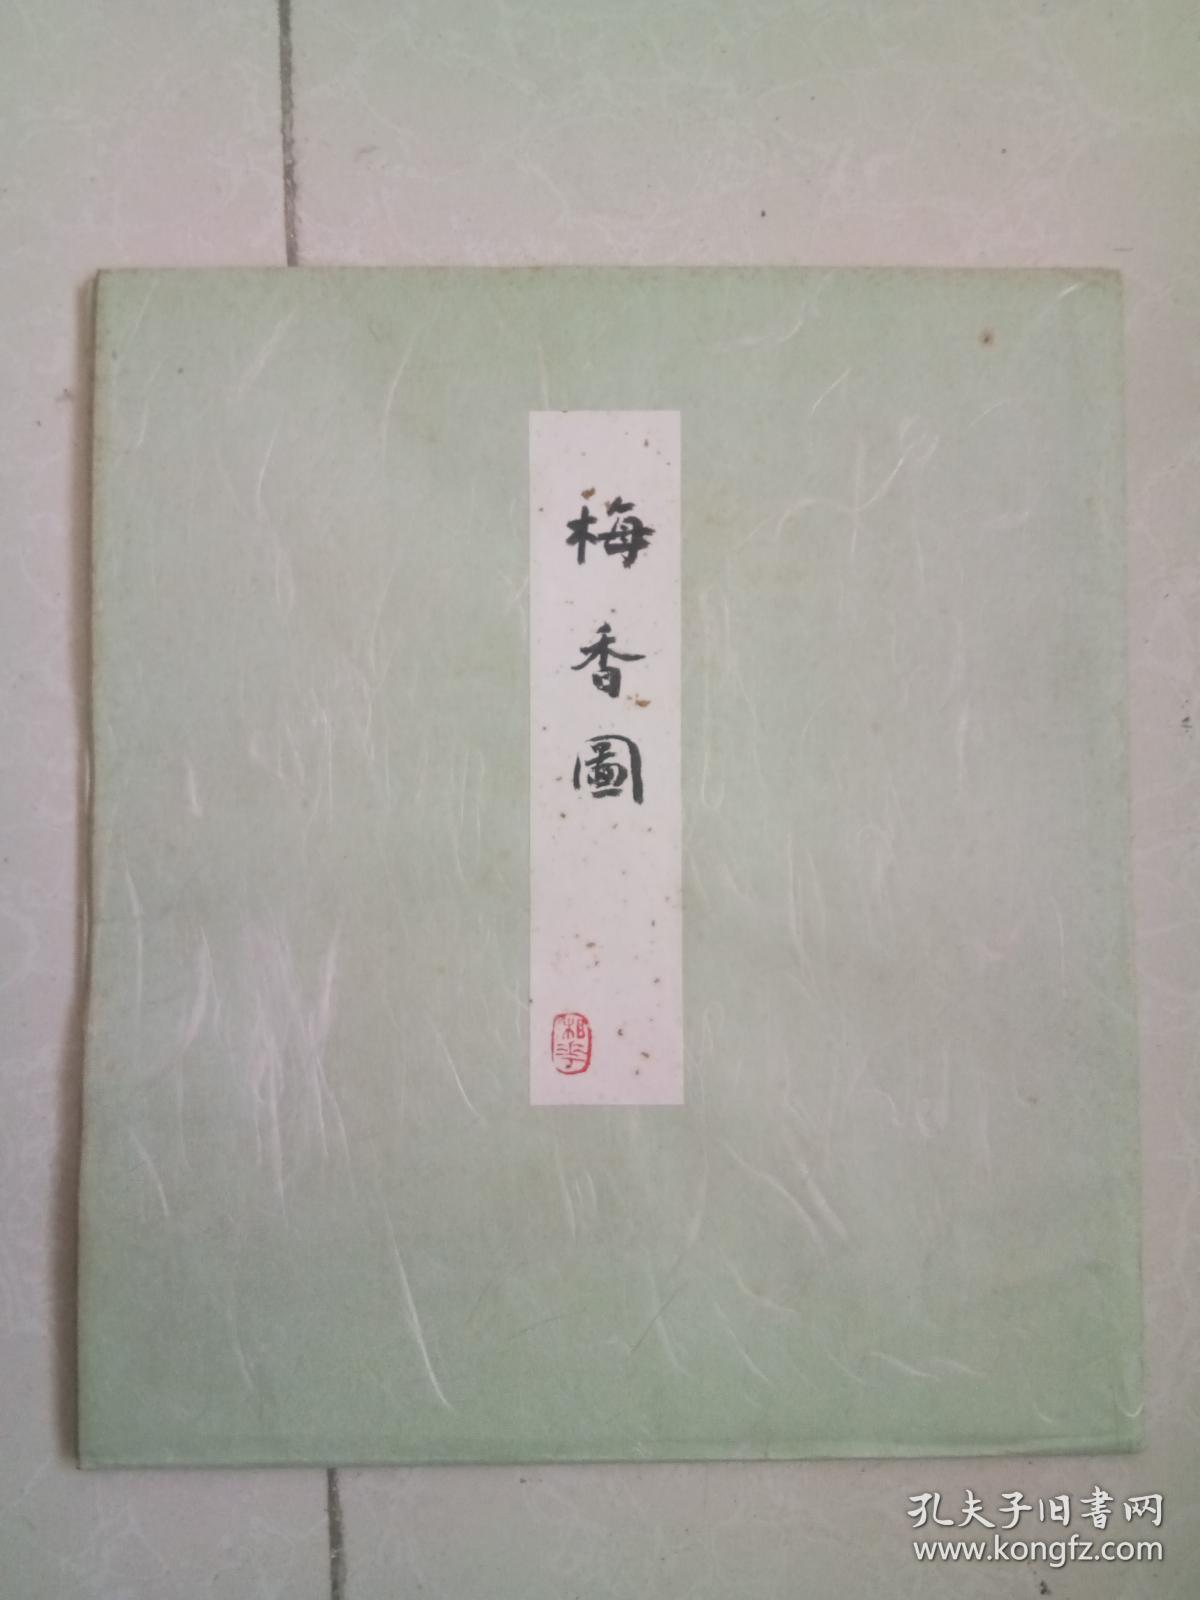 日本回流 西安著名画家 张湘华 日式 卡纸花鸟小品 有封套 尺寸25x28 应该是在日本画的 赠送日本人的